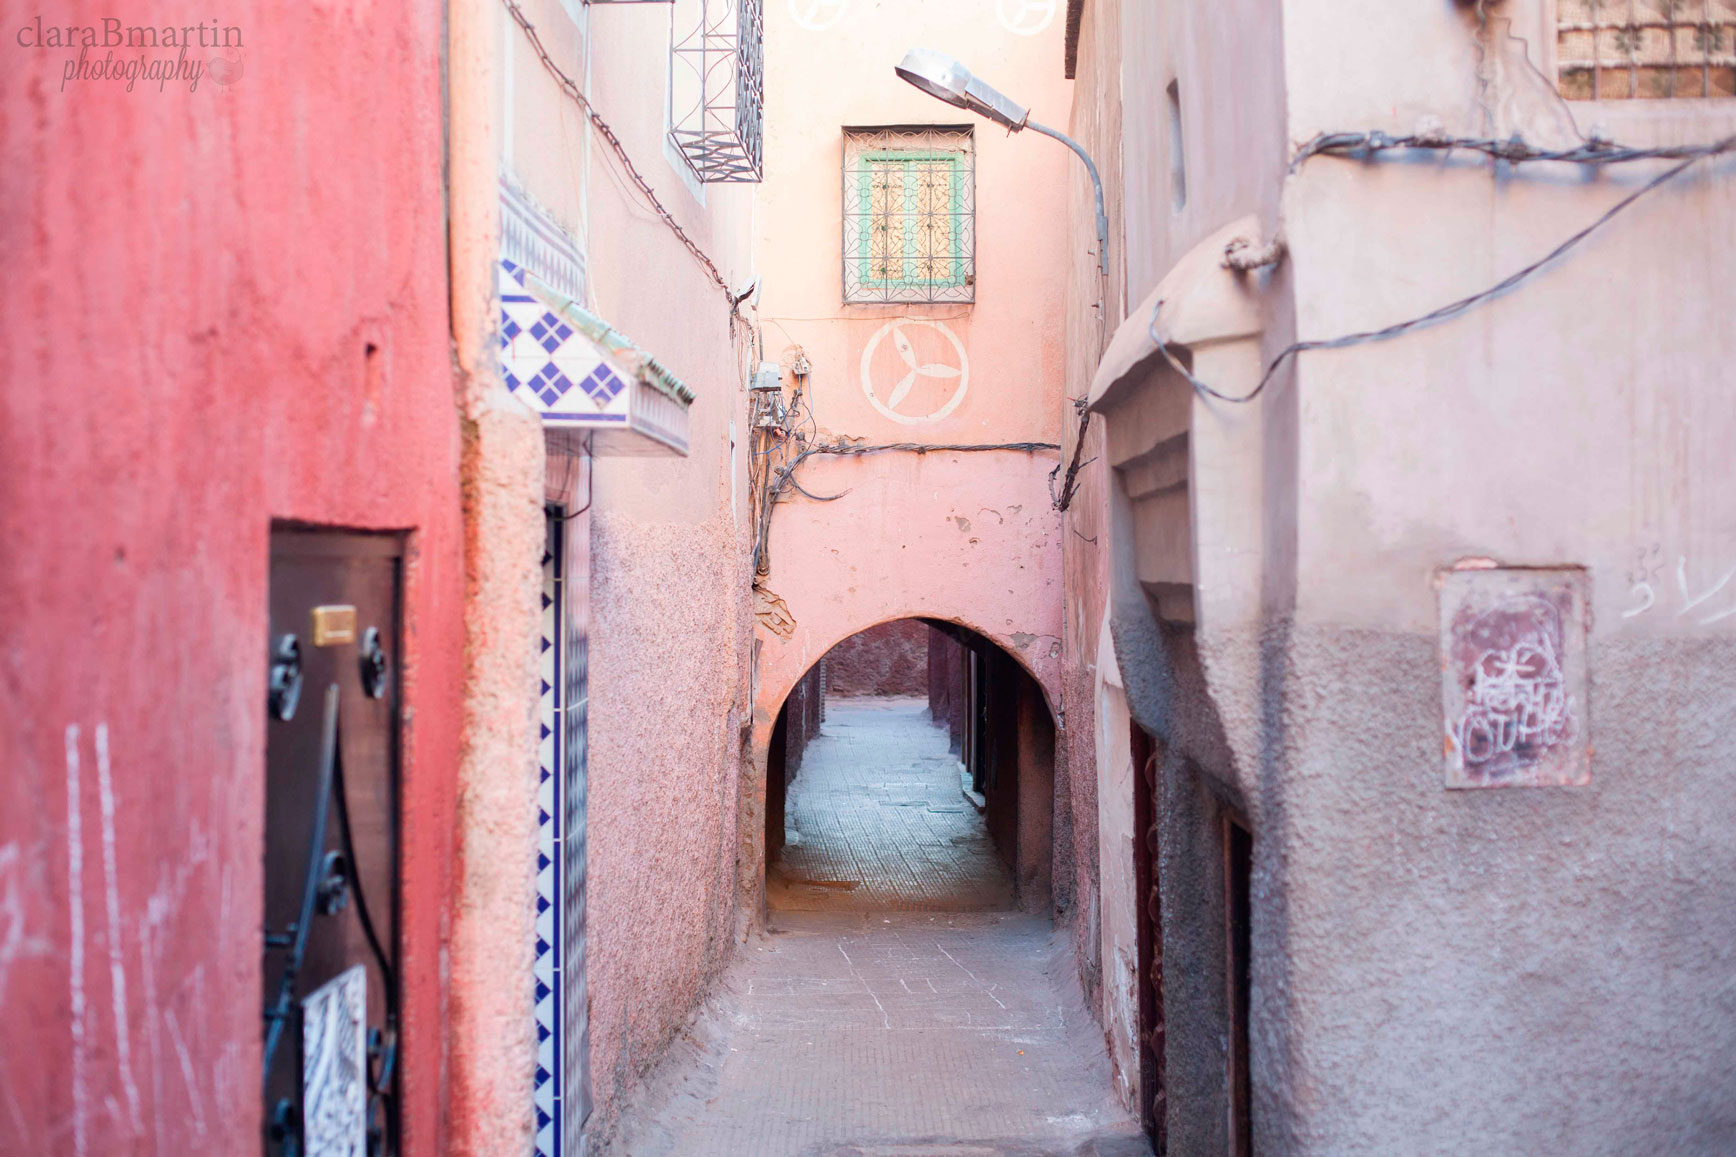 Marrakech_claraBmartin_04